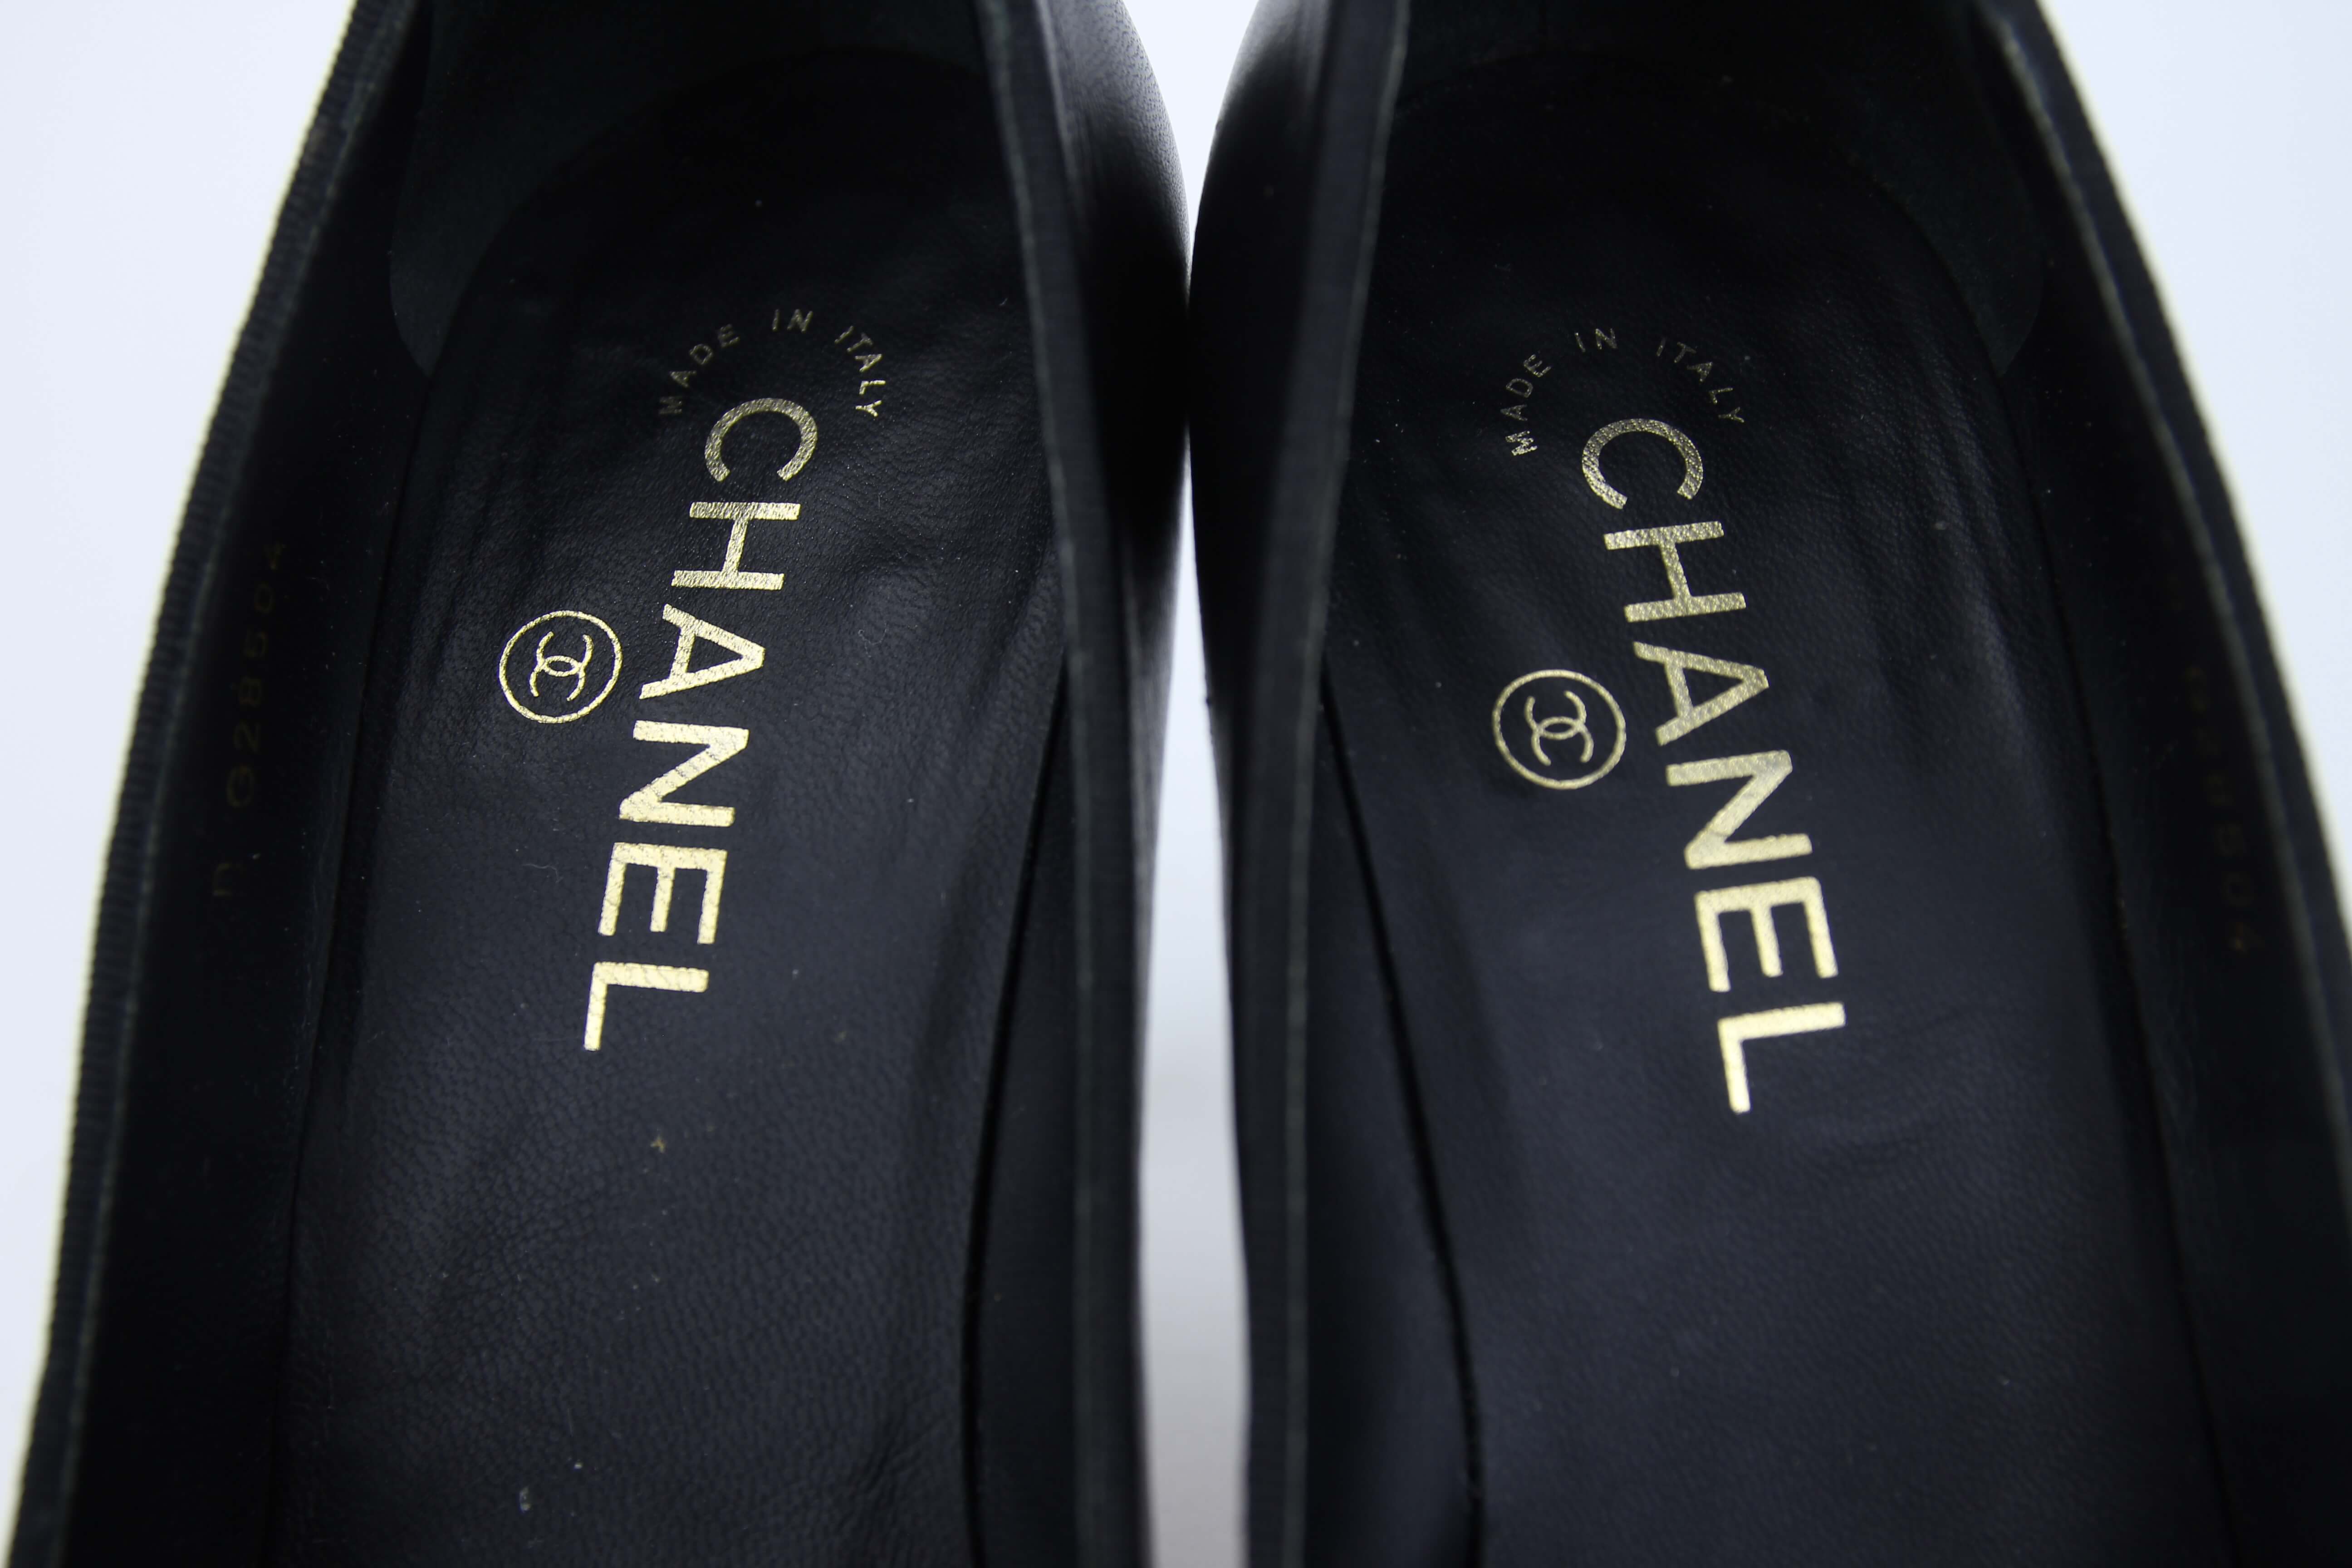 Chanel e Made in Italy com a mesma cor no foil e nas ferragens